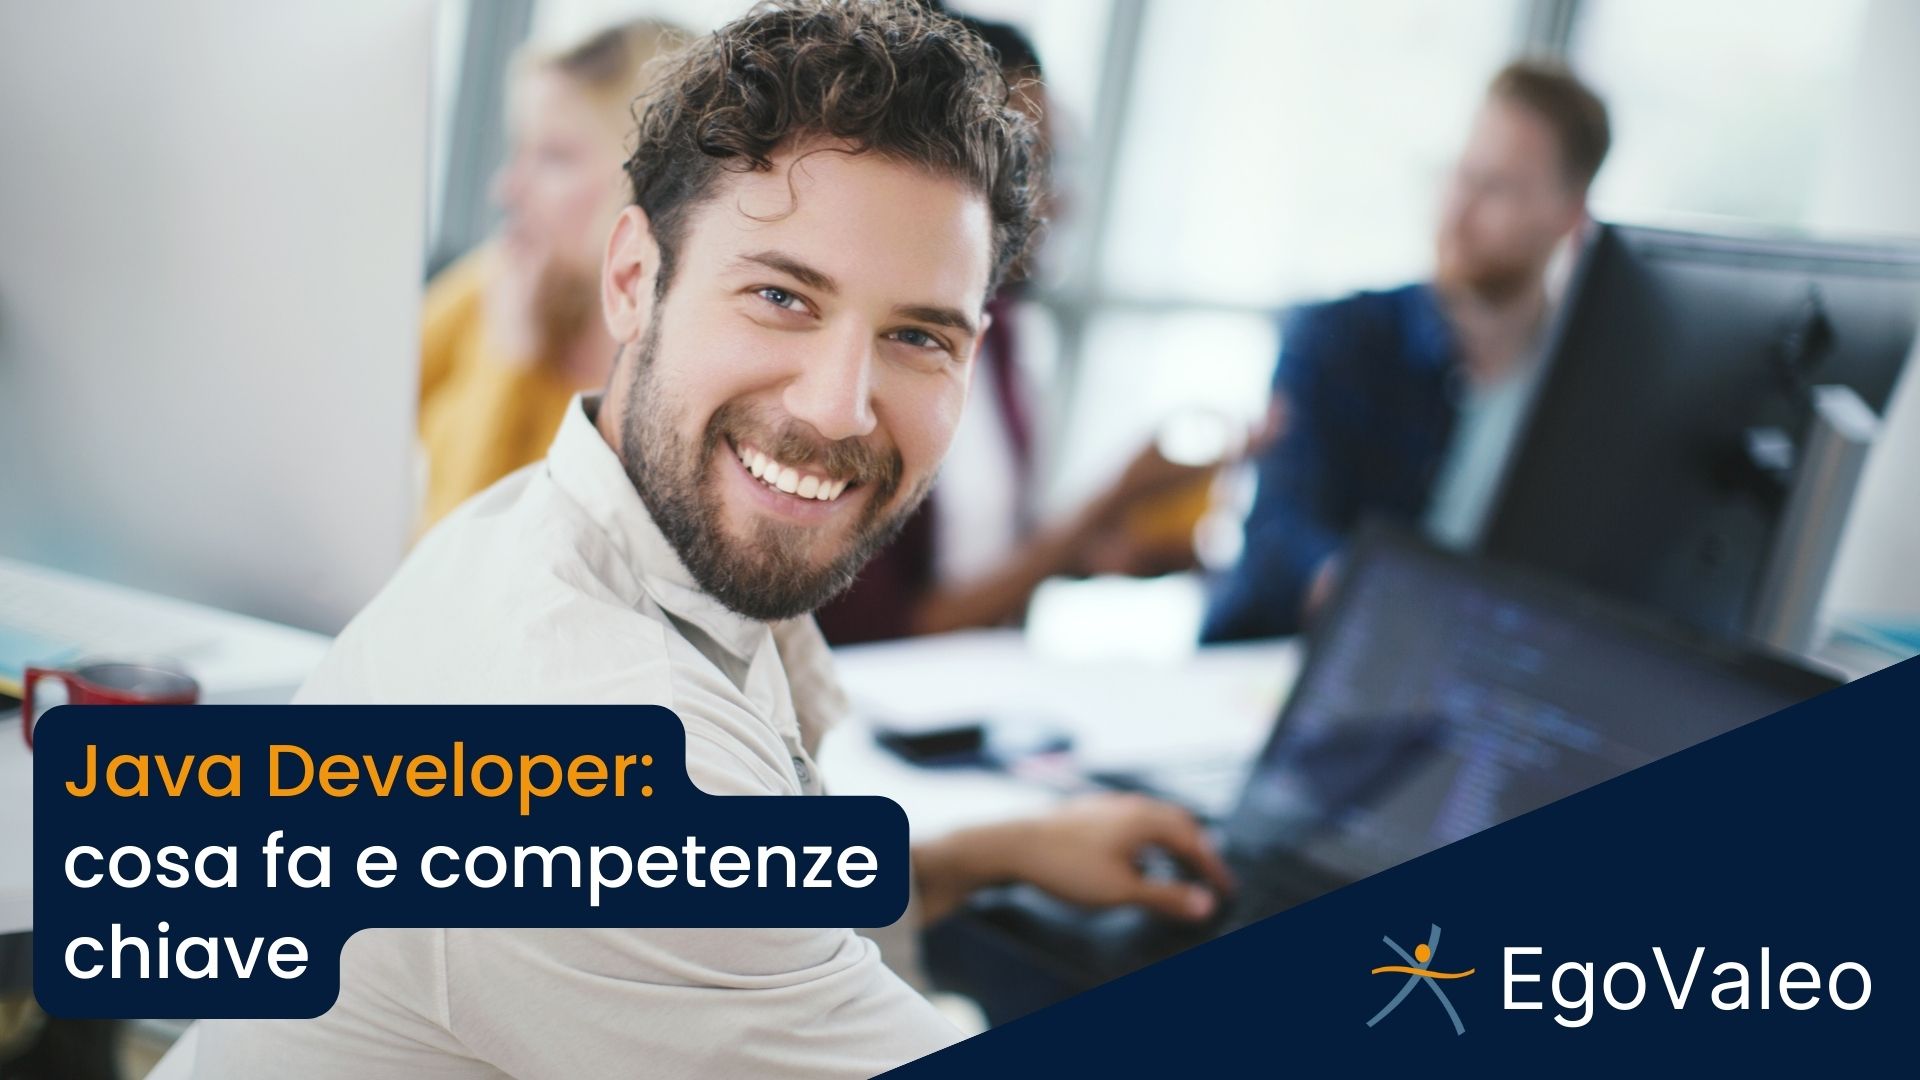 Java Developer: cosa fa e competenze chiave